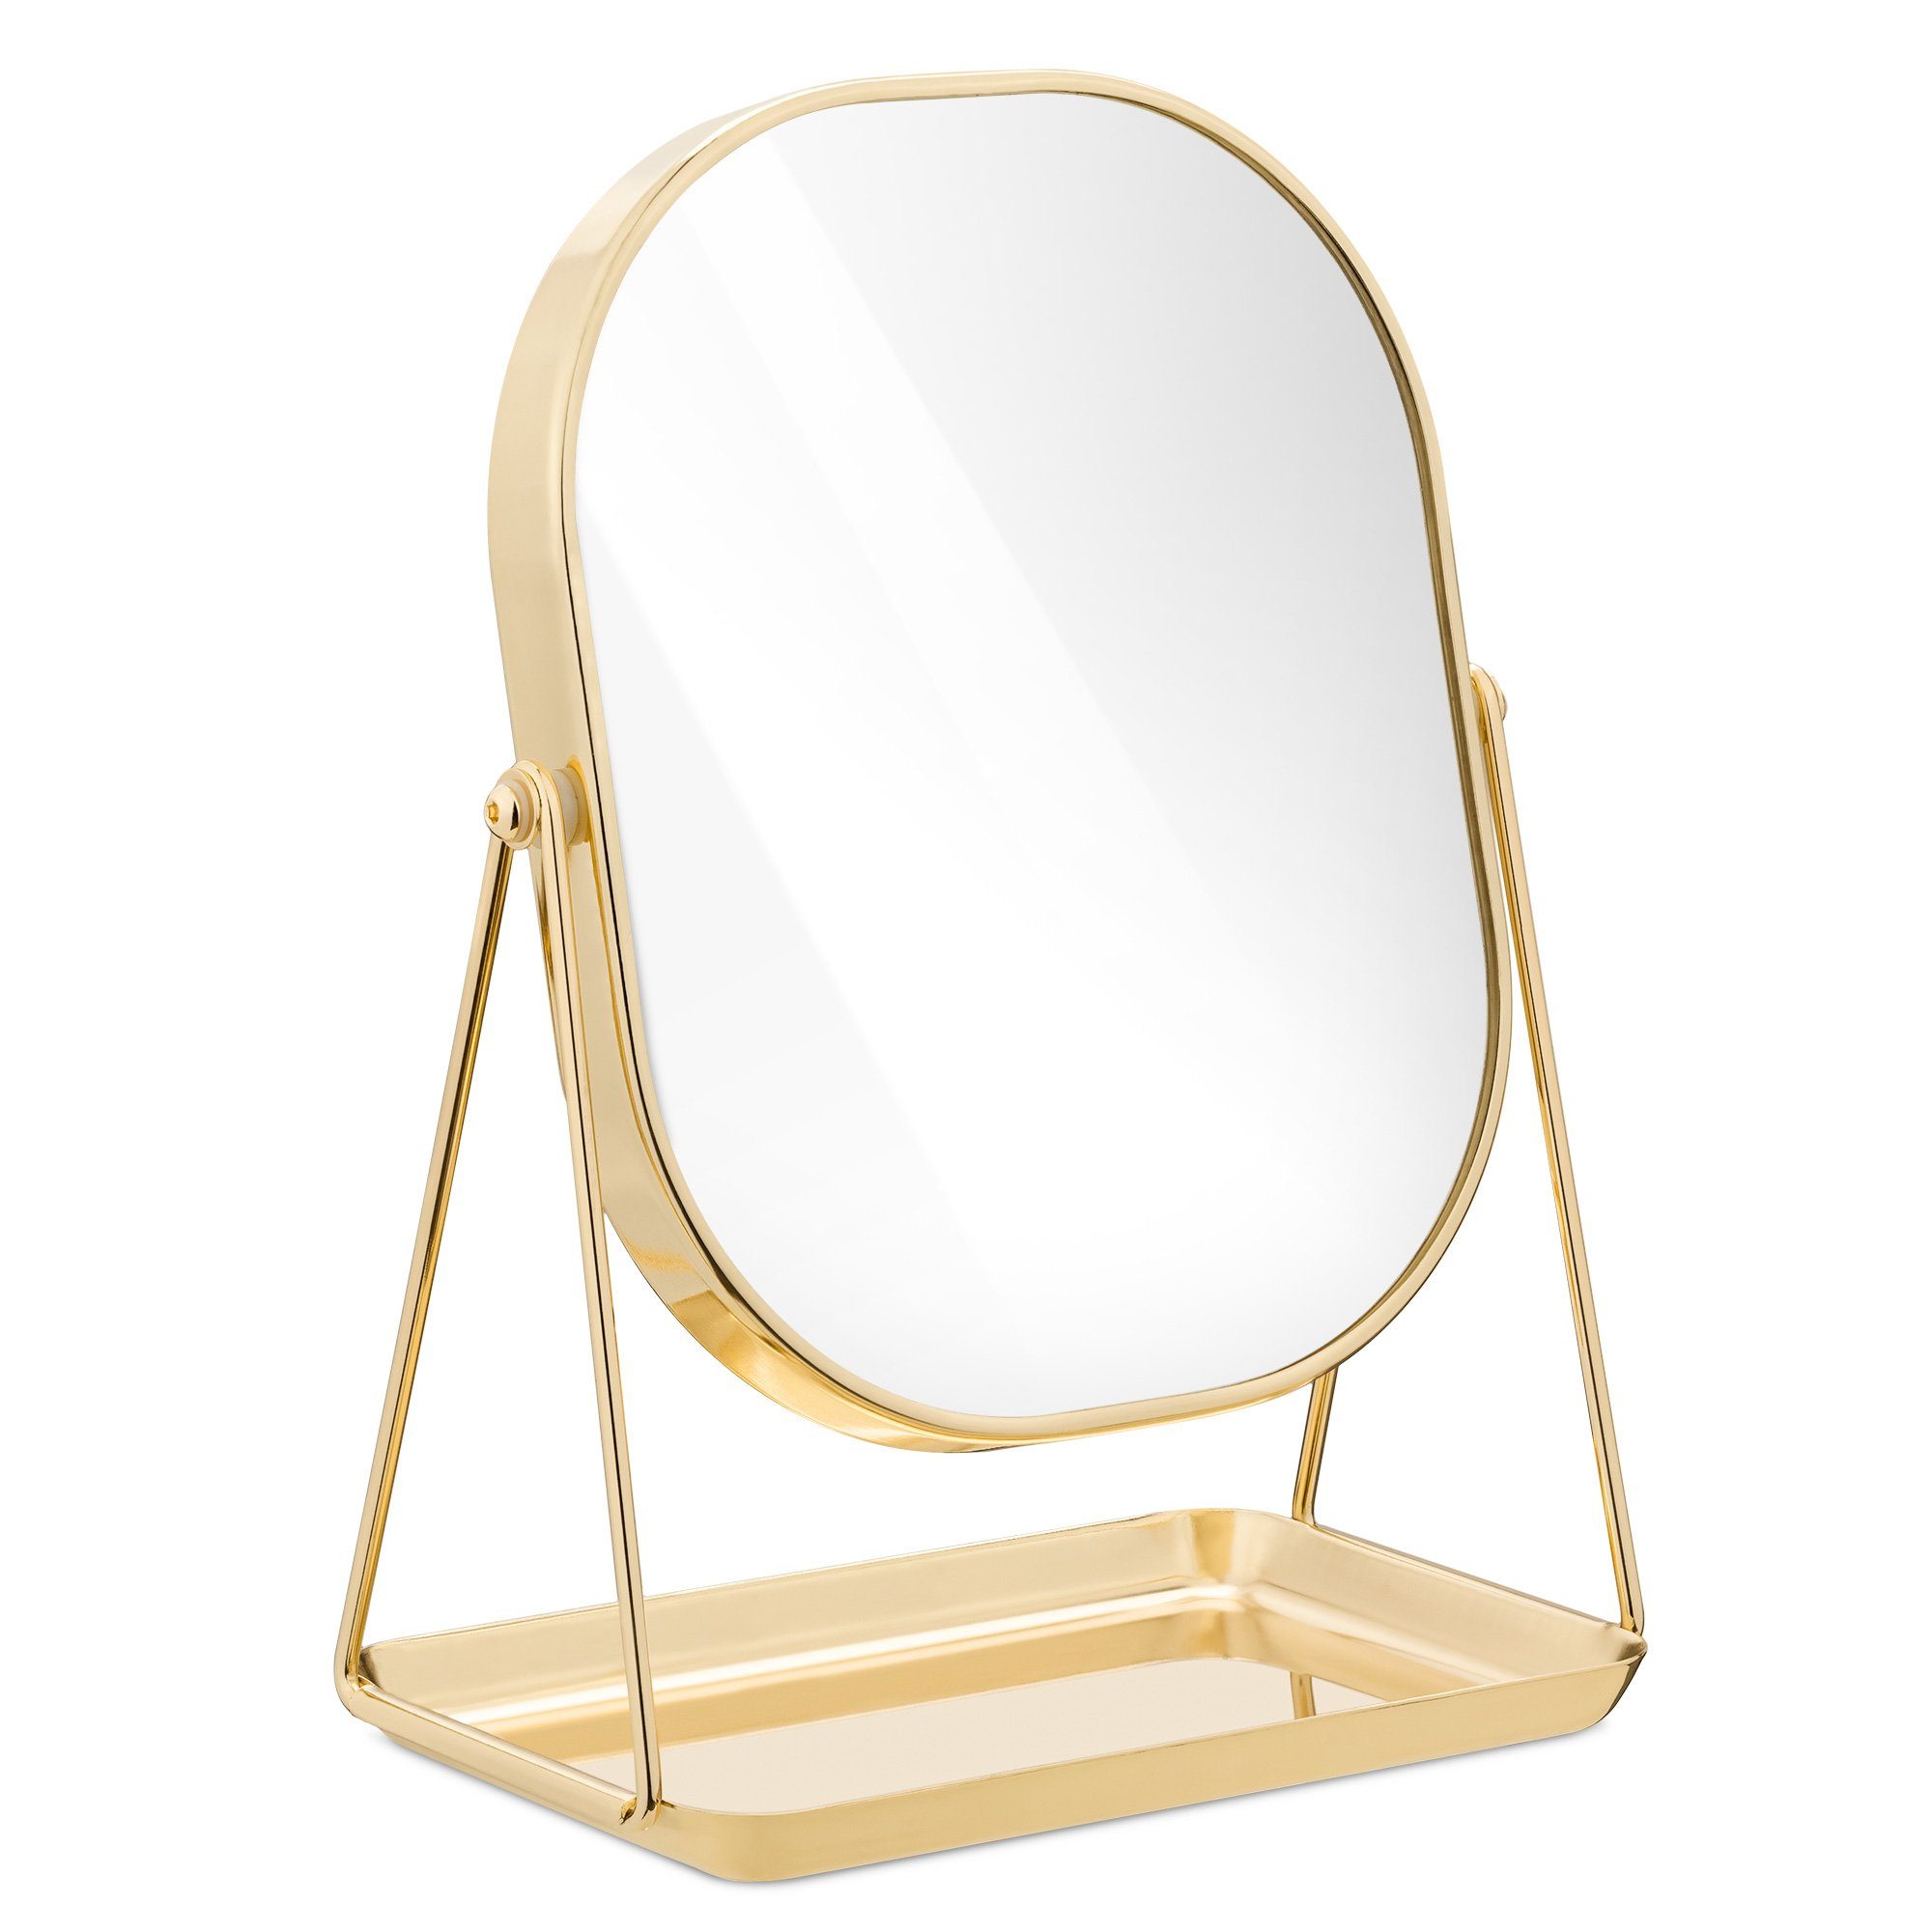 Navaris Kosmetikspiegel, Kosmetikspiegel Schminkspiegel Tischspiegel mit  Schmuckaufbewahrung - Spiegel zum Schminken und Frisieren - Standspiegel  mit Aufbewahrung online kaufen | OTTO